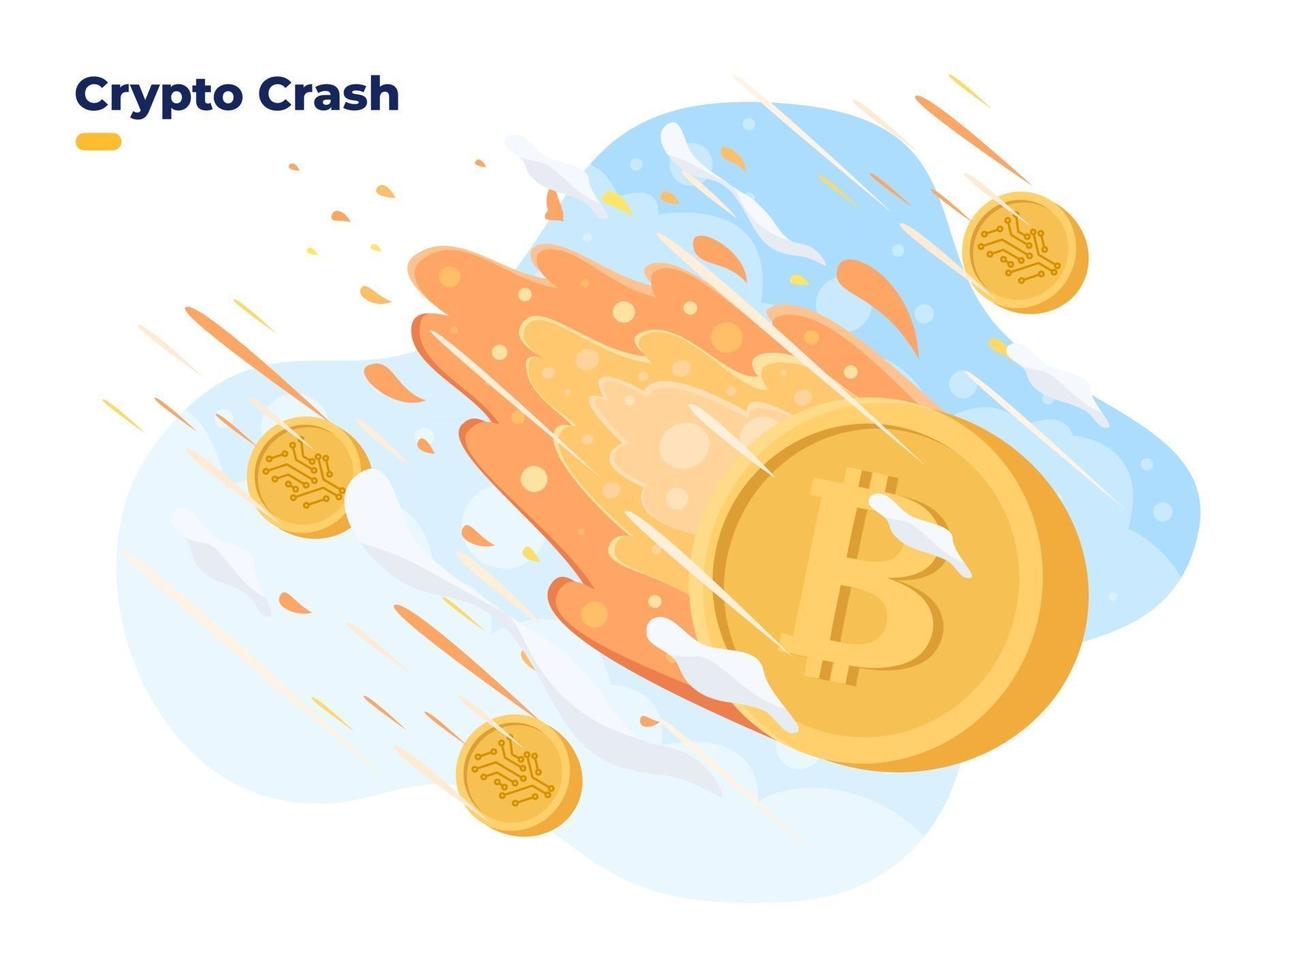 le prix de la crypto-monnaie chute. effondrement du prix de la crypto sur le marché boursier crise du bitcoin brûlure et crash de la crypto-monnaie l'investissement en crypto-monnaie est à haut risque vecteur